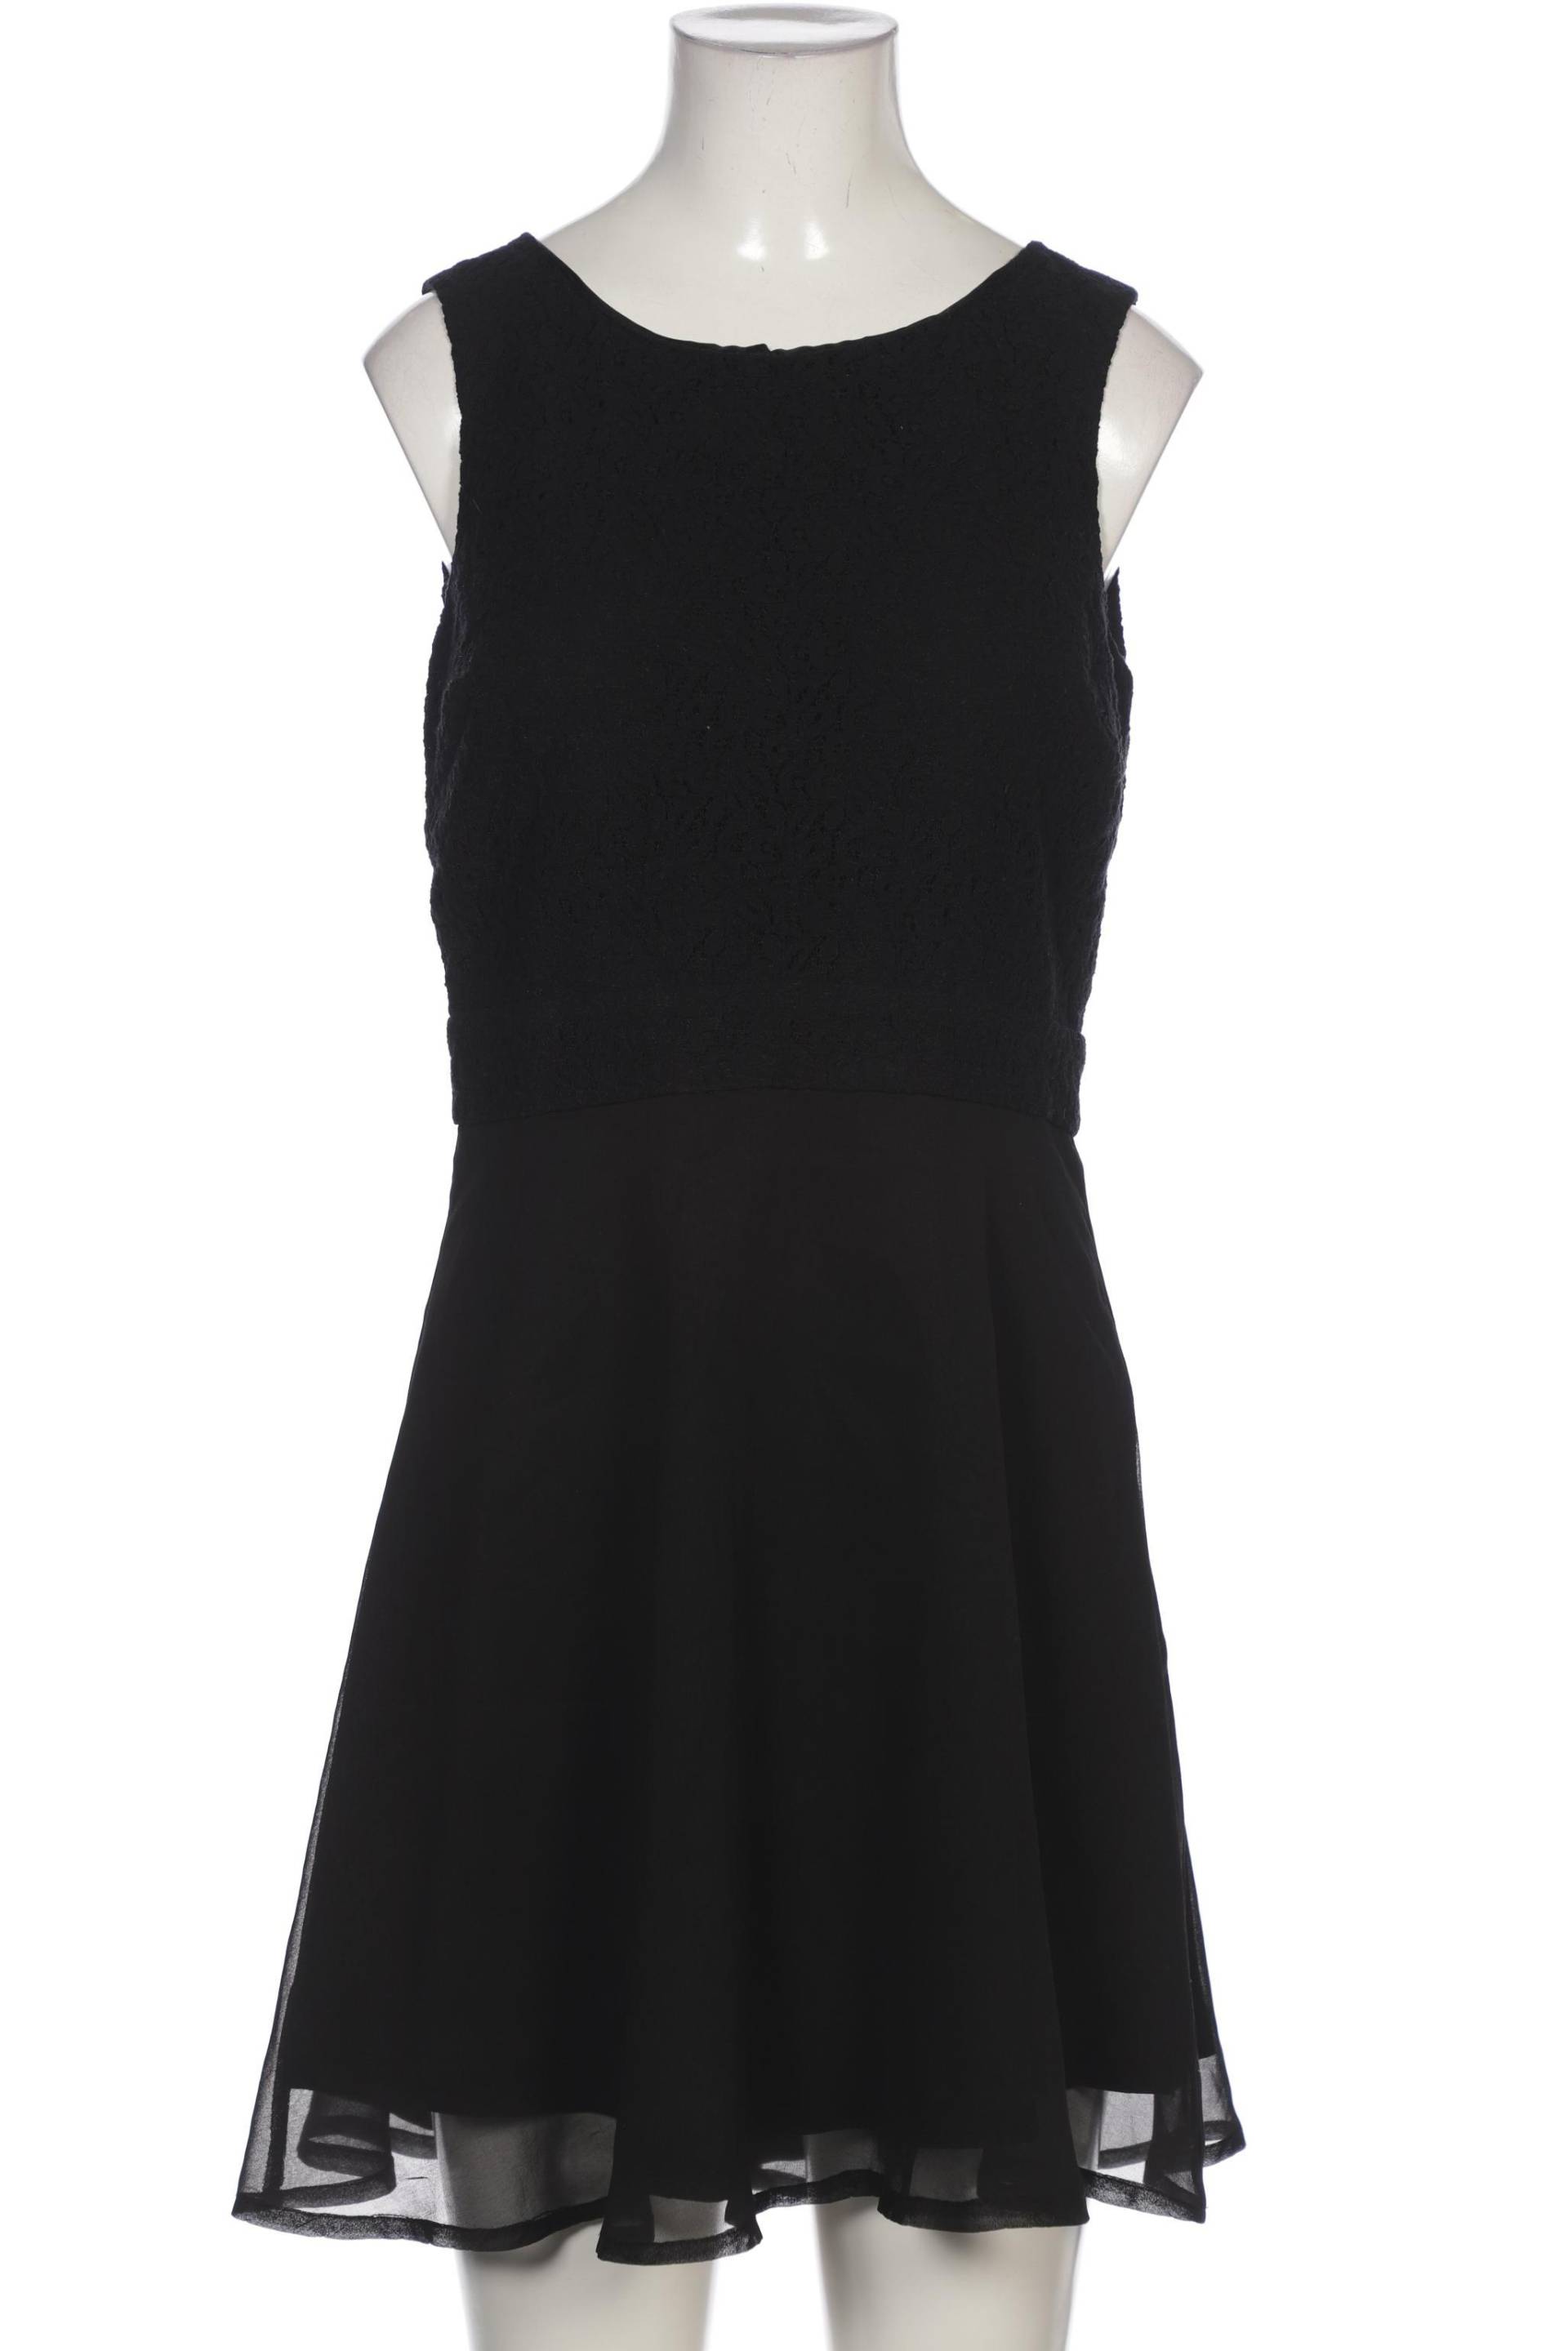 s.Oliver Selection Damen Kleid, schwarz, Gr. 36 von s.Oliver Selection